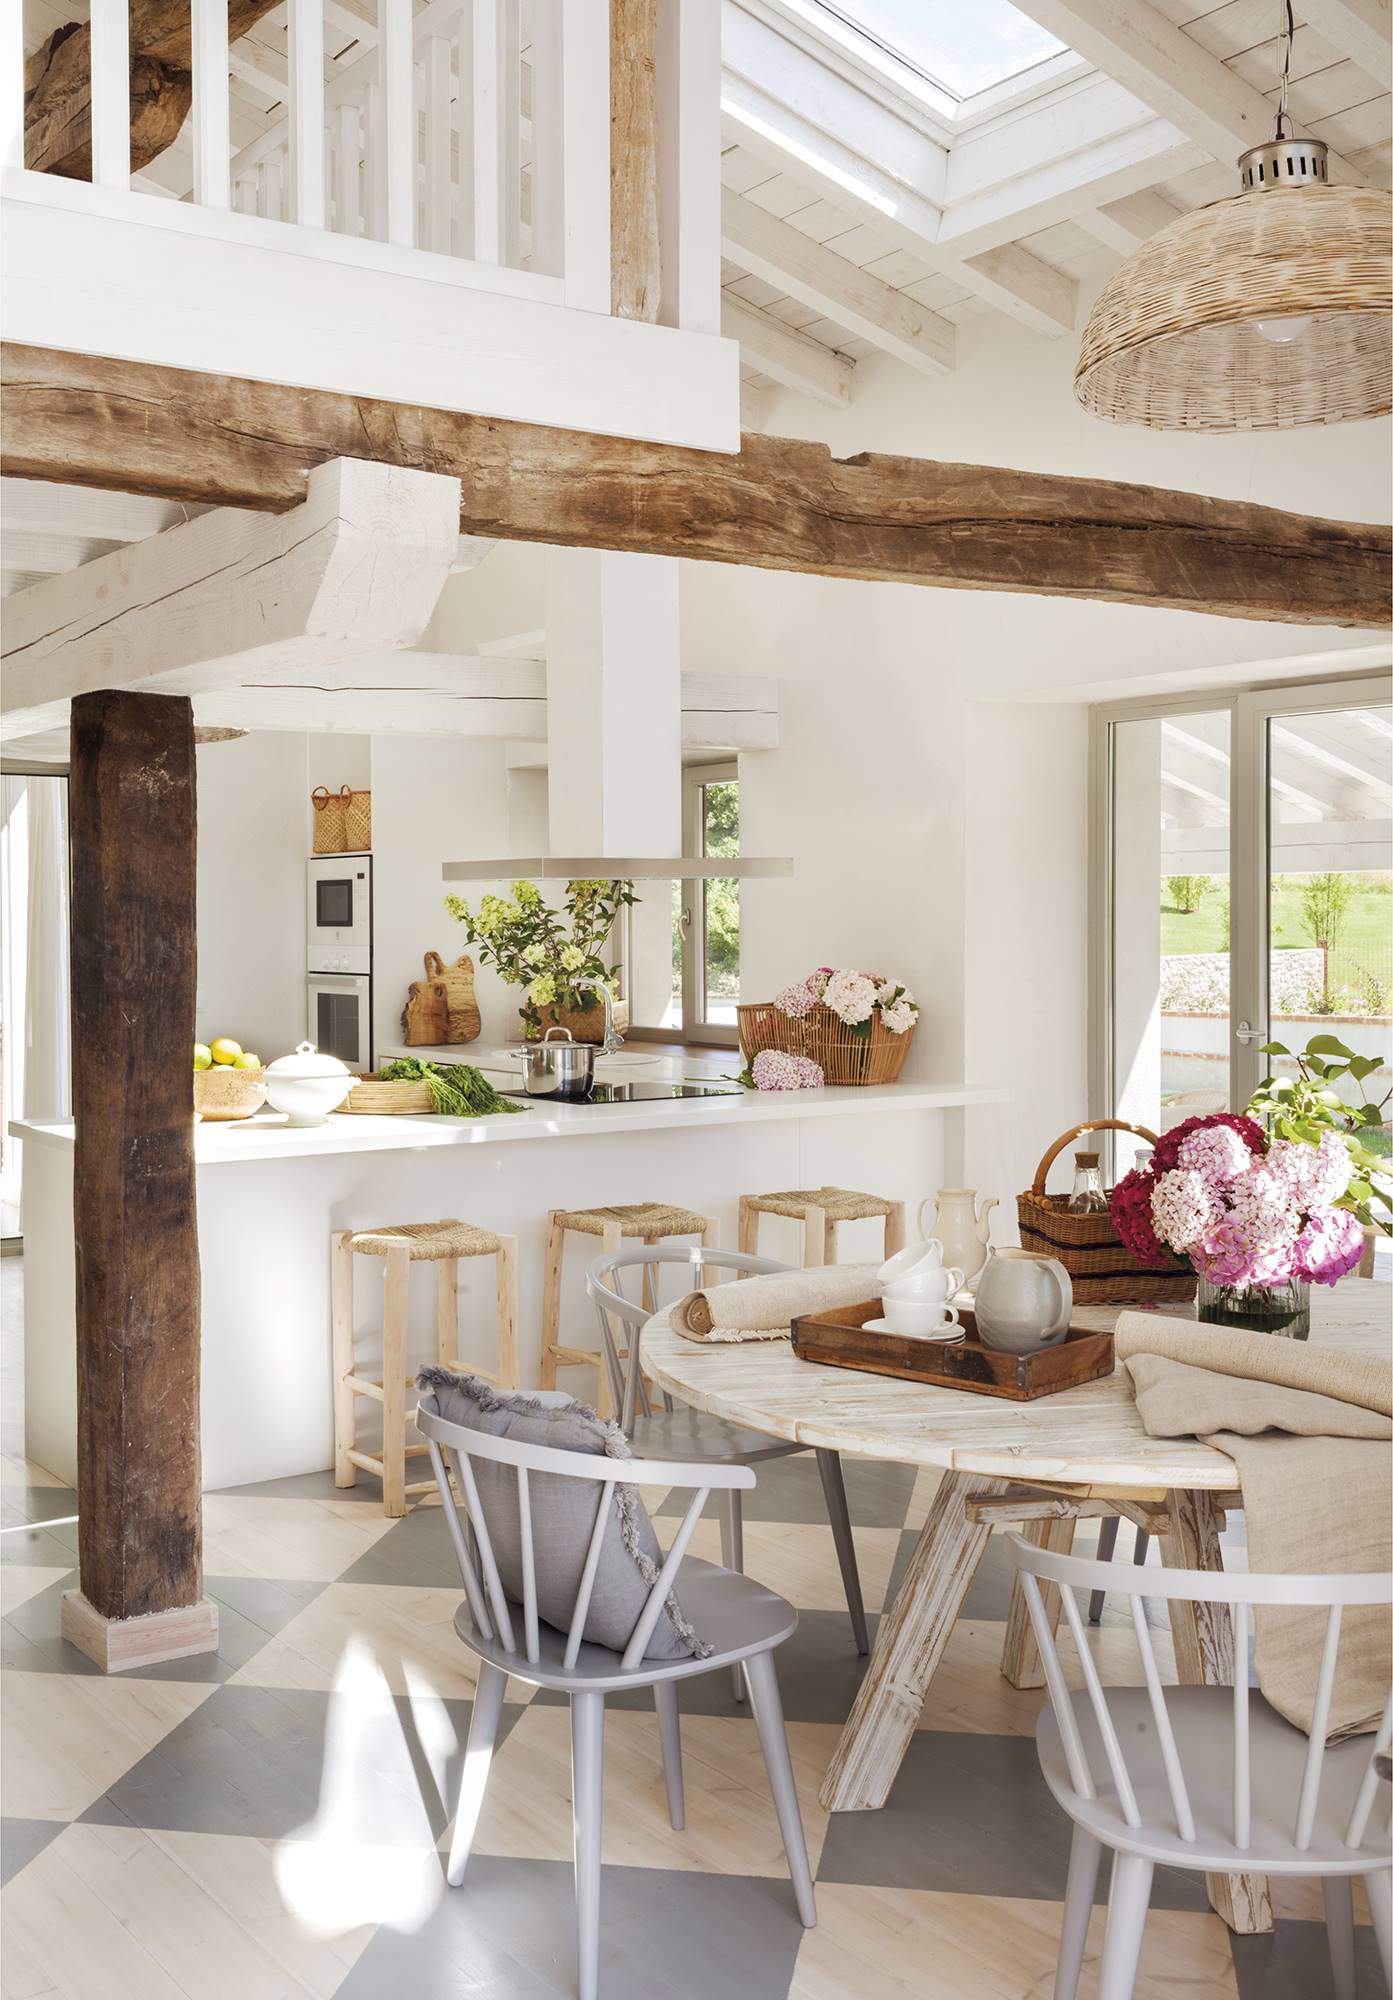 Cocina con vigas de madera natural a la vista, muebles de estilo rústico, y techos abovedados en blanco.